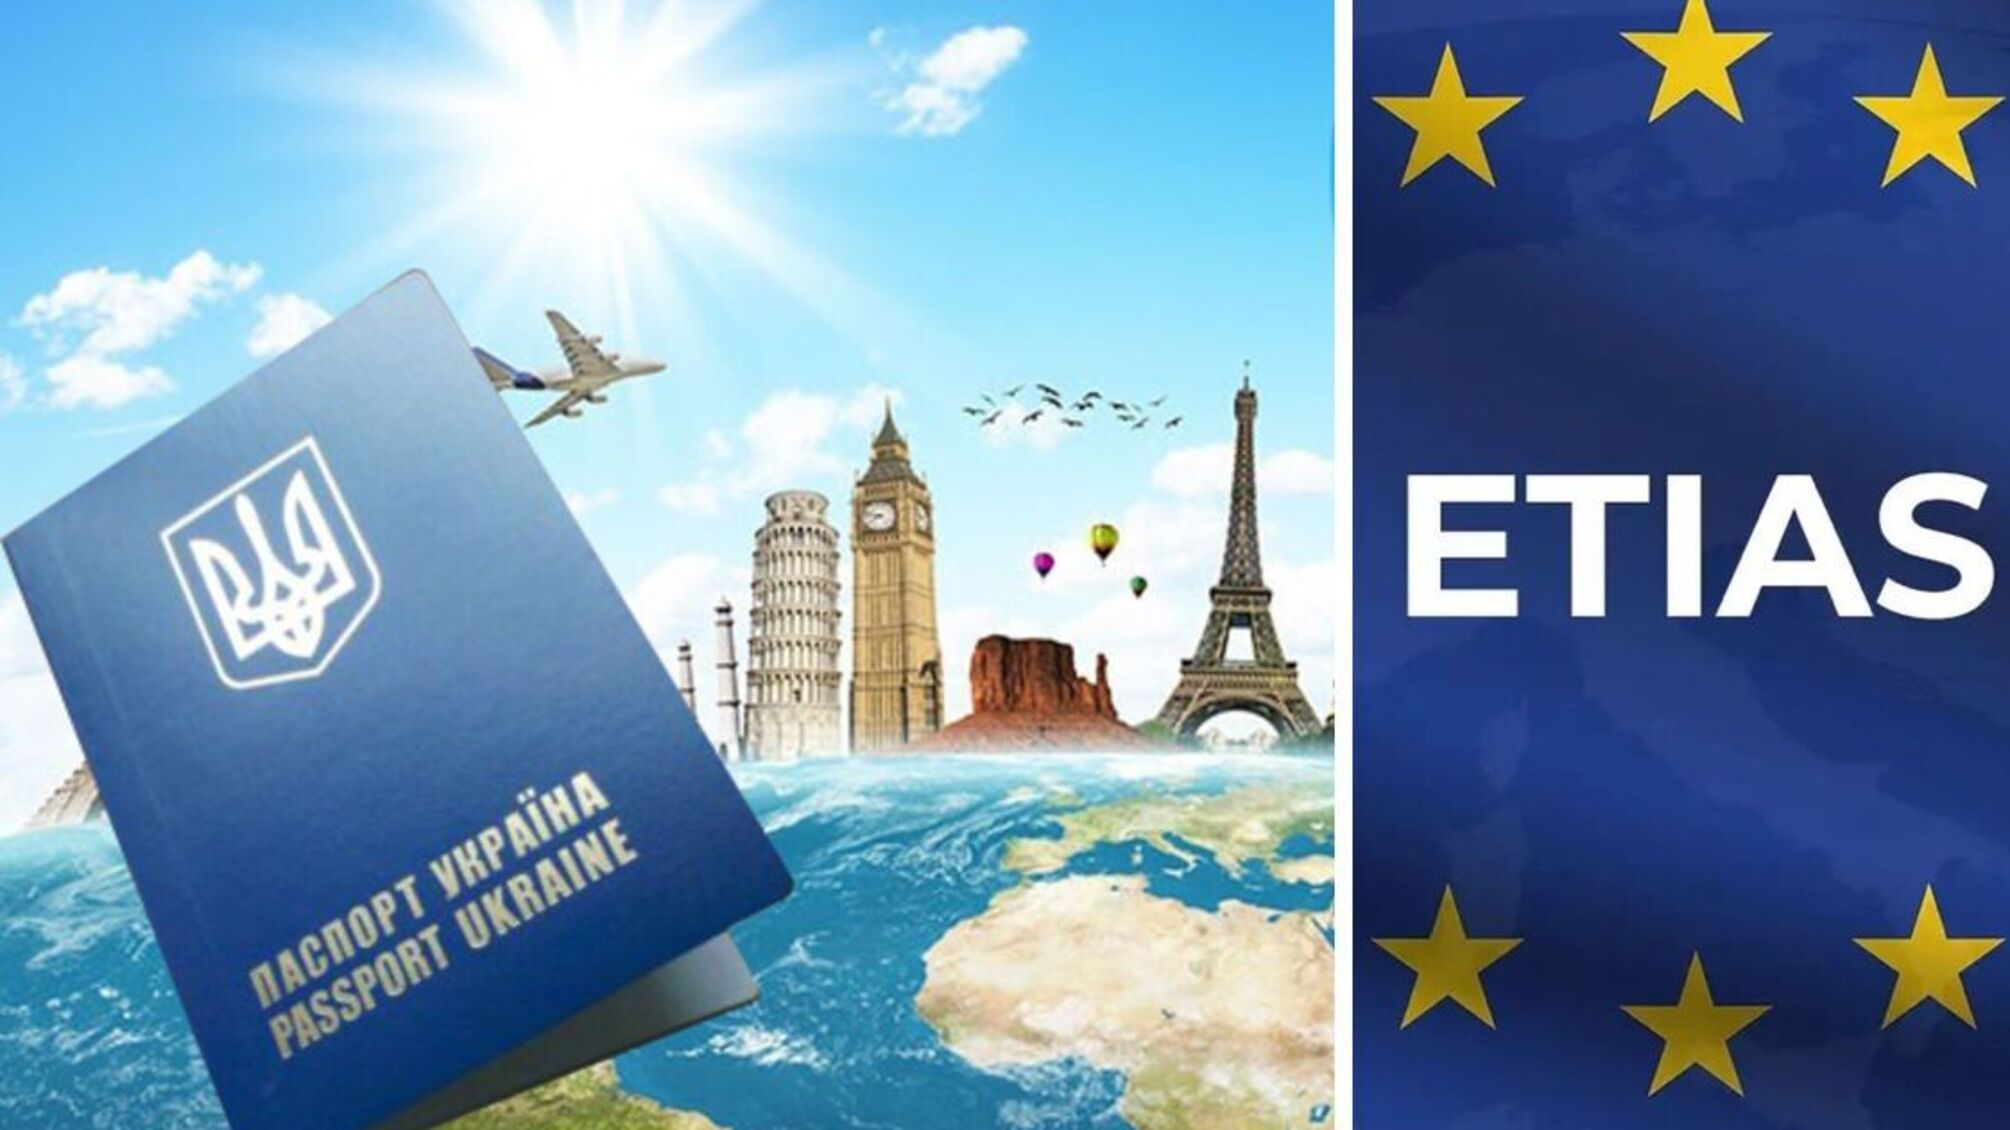 З наступного року в'їзд до ЄС буде платним: вартість дозволу становитиме сім євро з людини, — сайт Євросоюзу